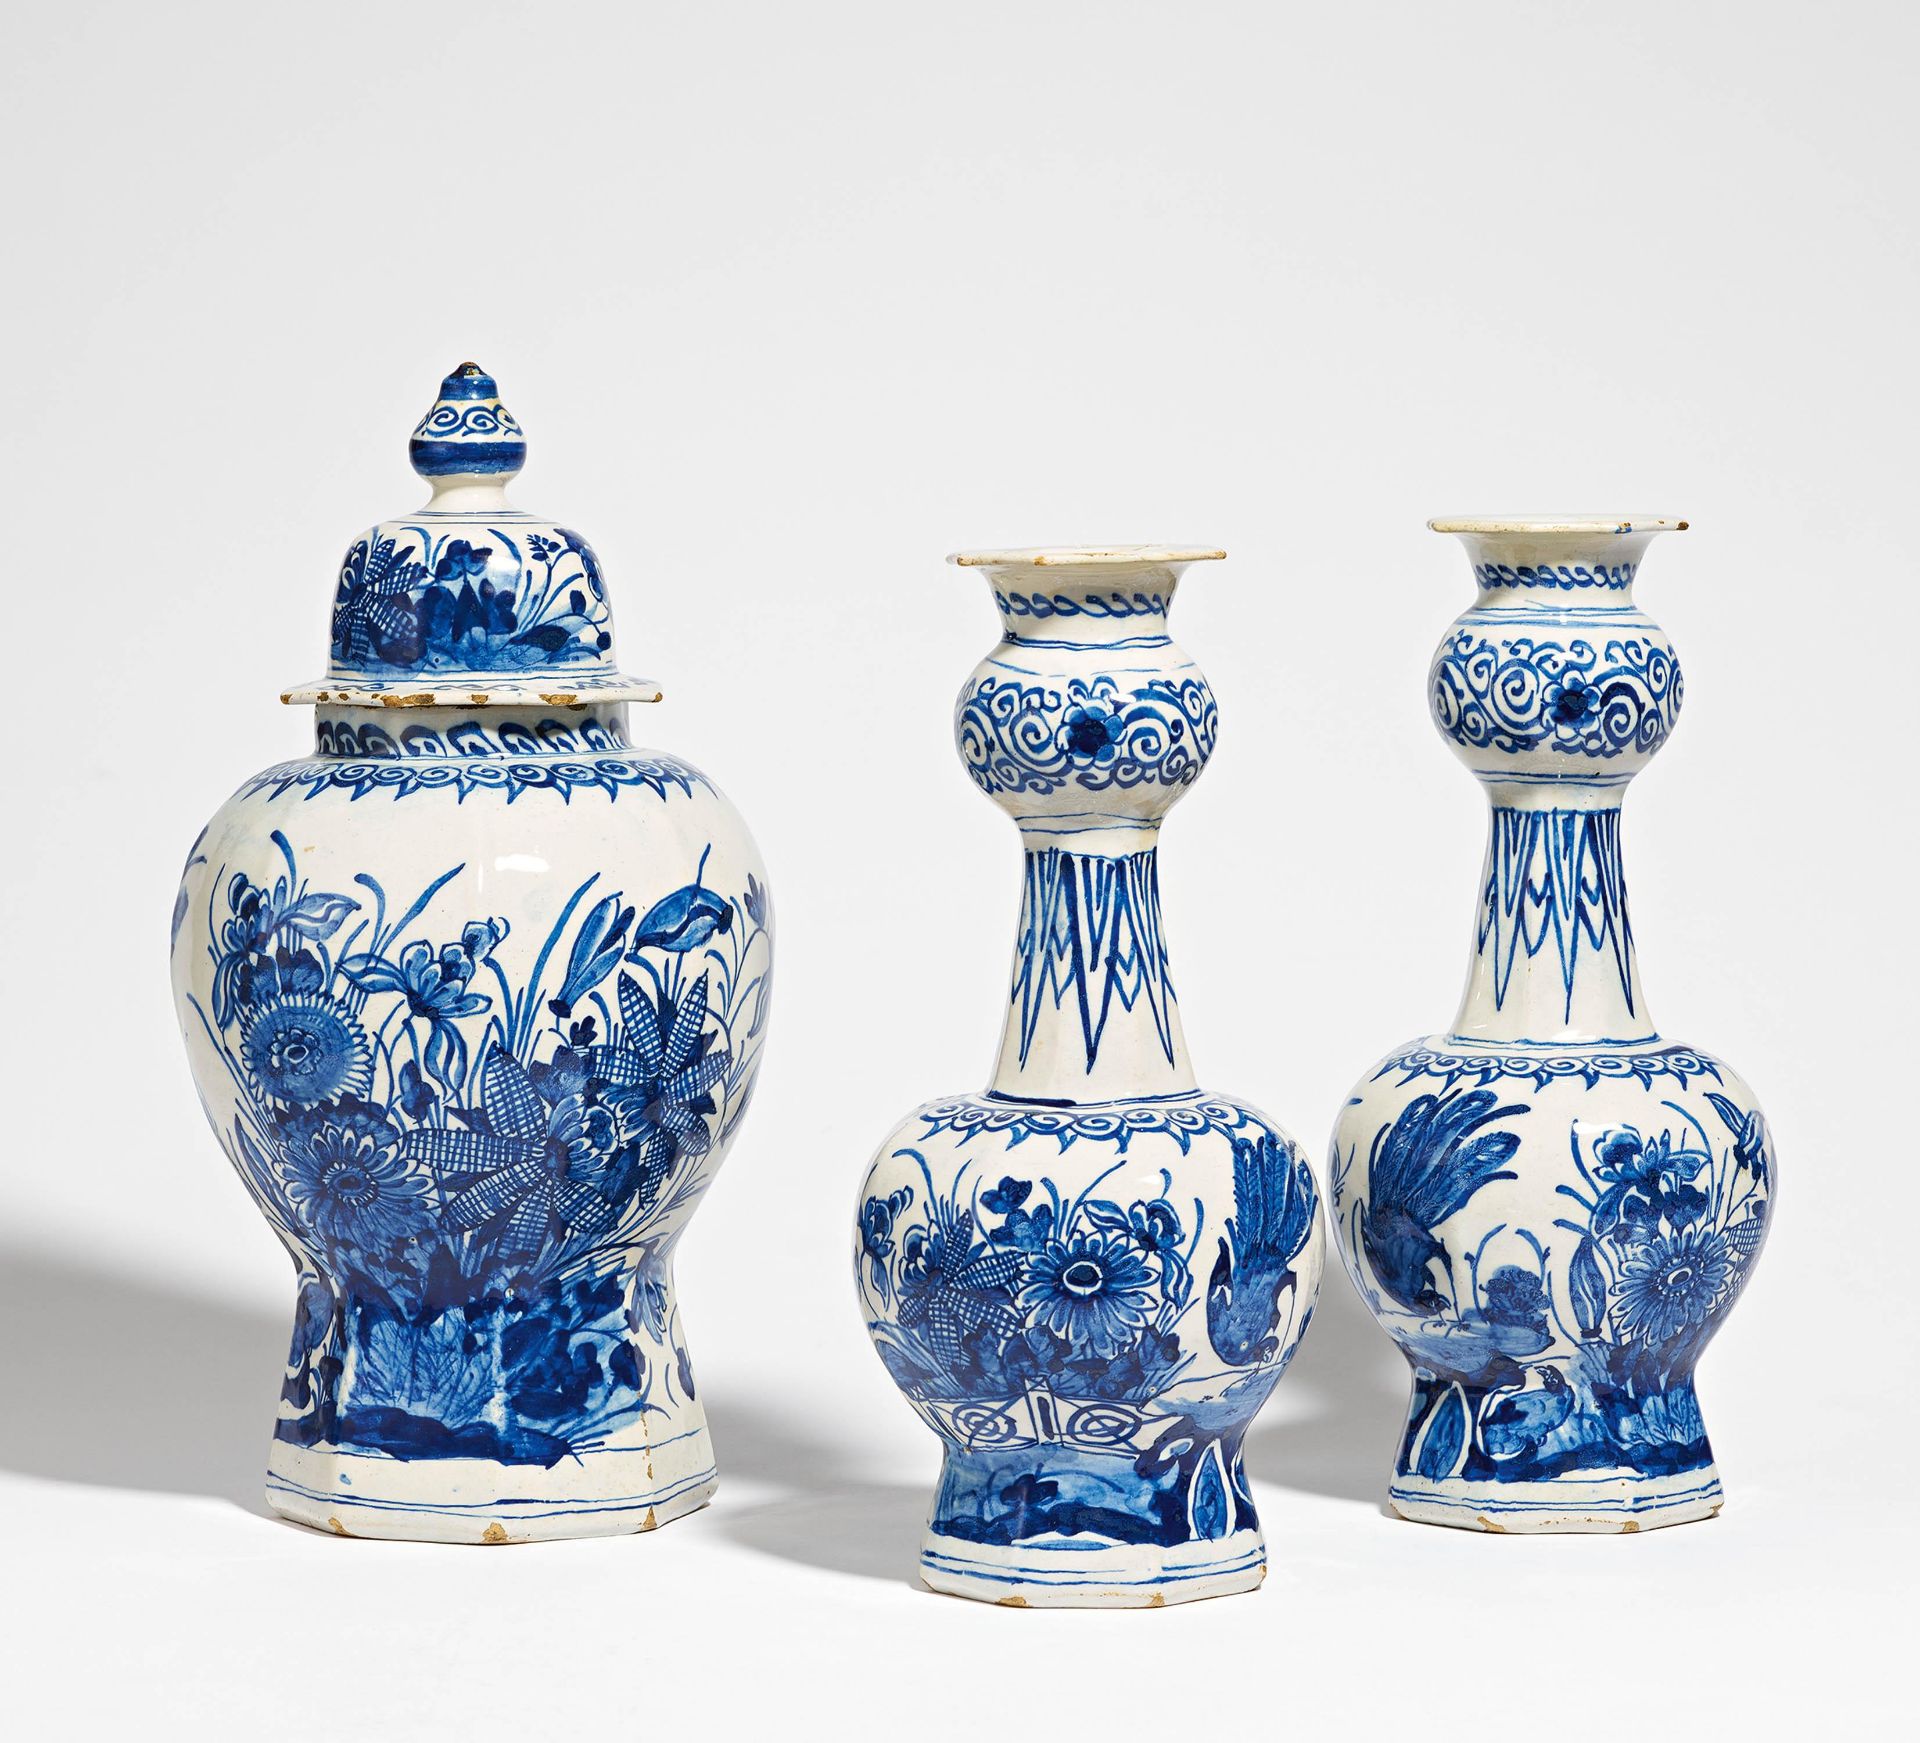 Three-piece set of vases